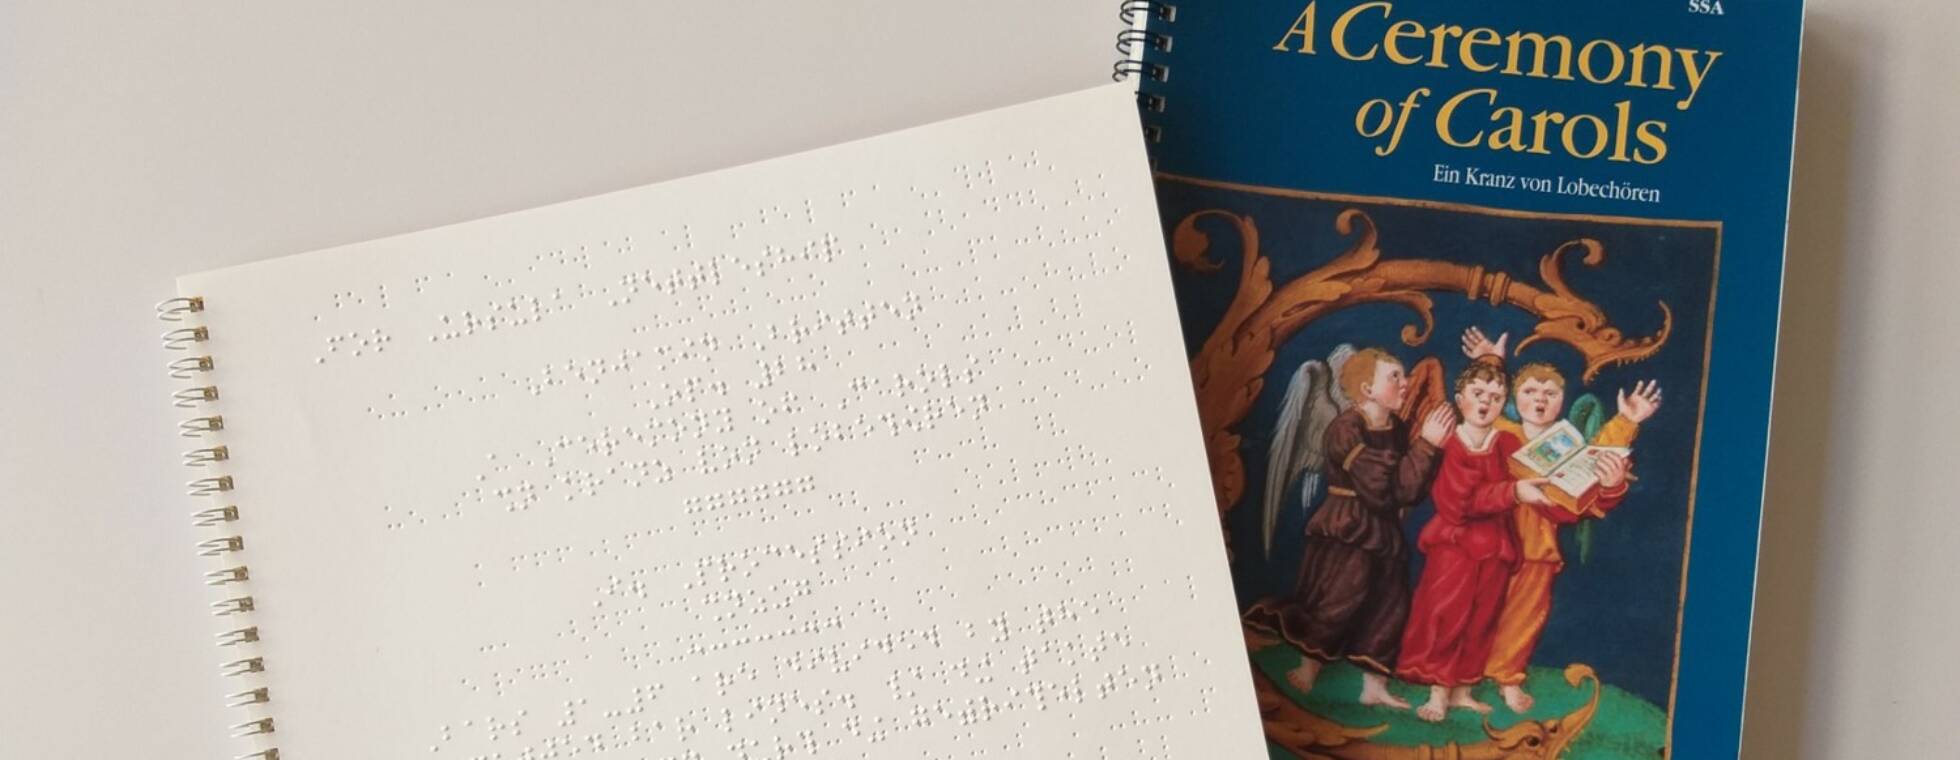 rechts das Cover der Schwarzdruck-Ausgabe von Benjamin Brittens "A Ceremony of Carols", links Auszug aus dem ersten Satz in Braillenoten